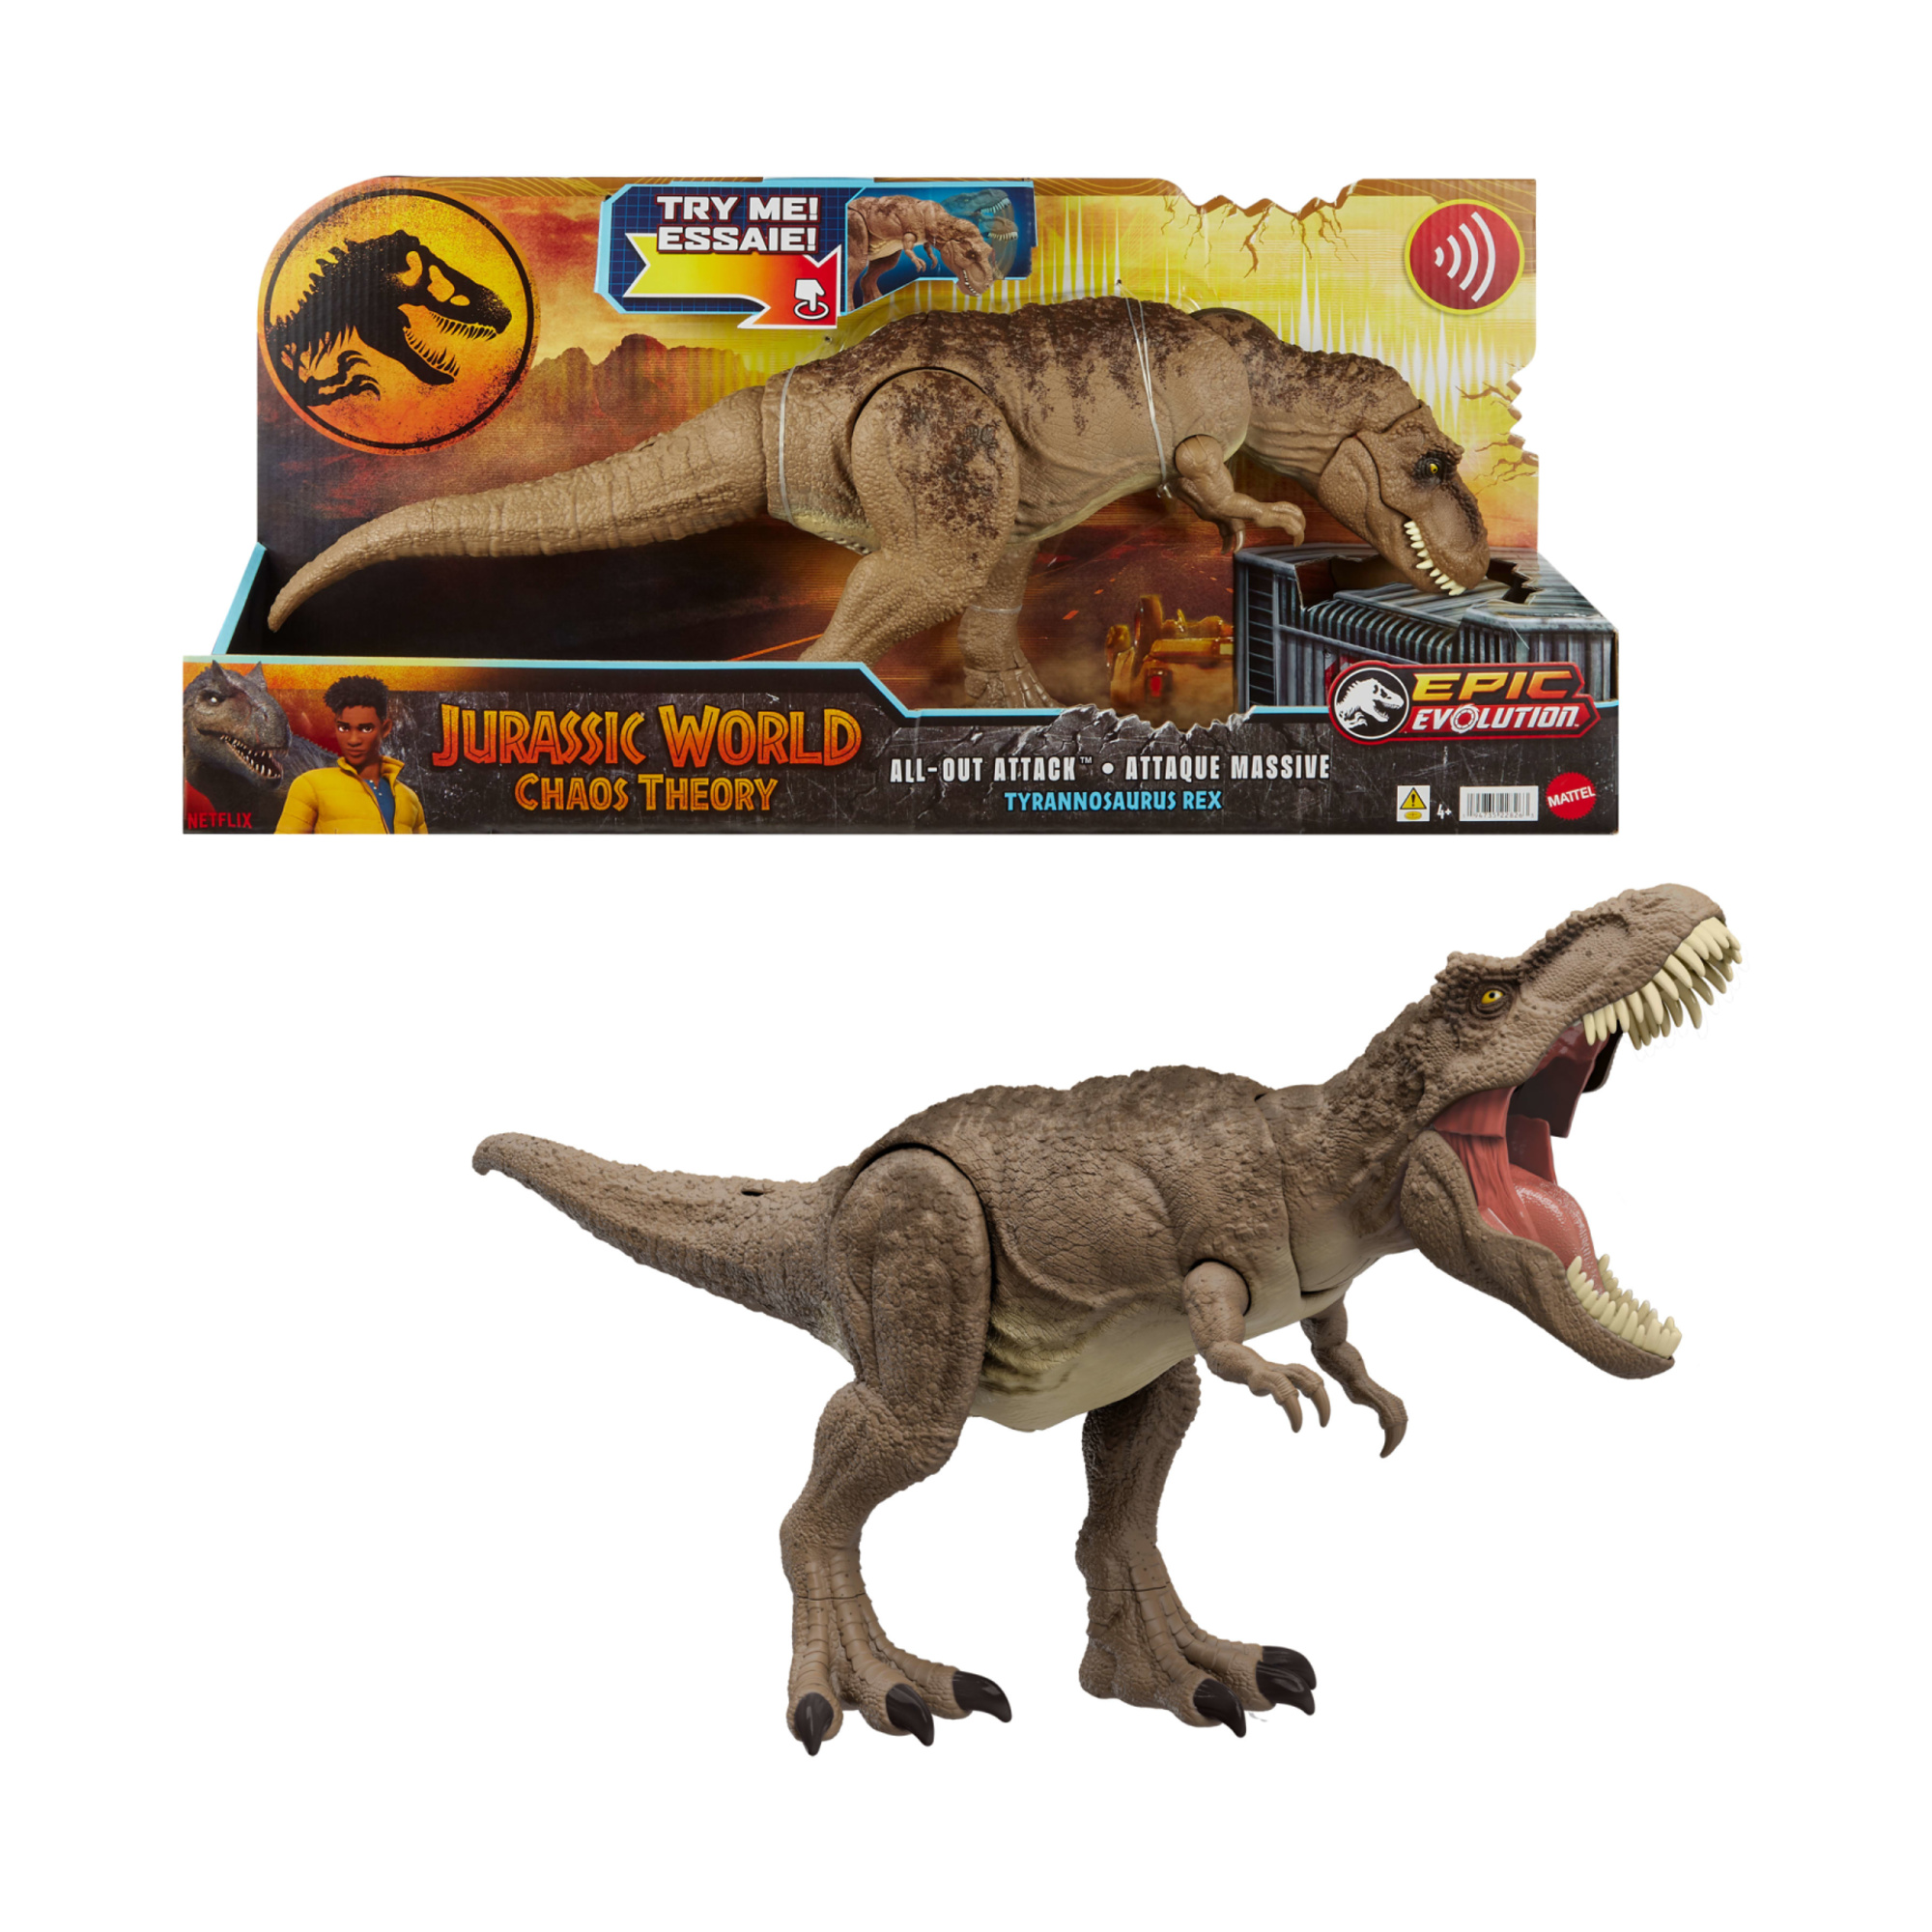 Jurassic world - t-rex attacco selvaggio, dinosauro con aculei evoluti e mossa d'attacco furioso, morso e ruggito - Jurassic World